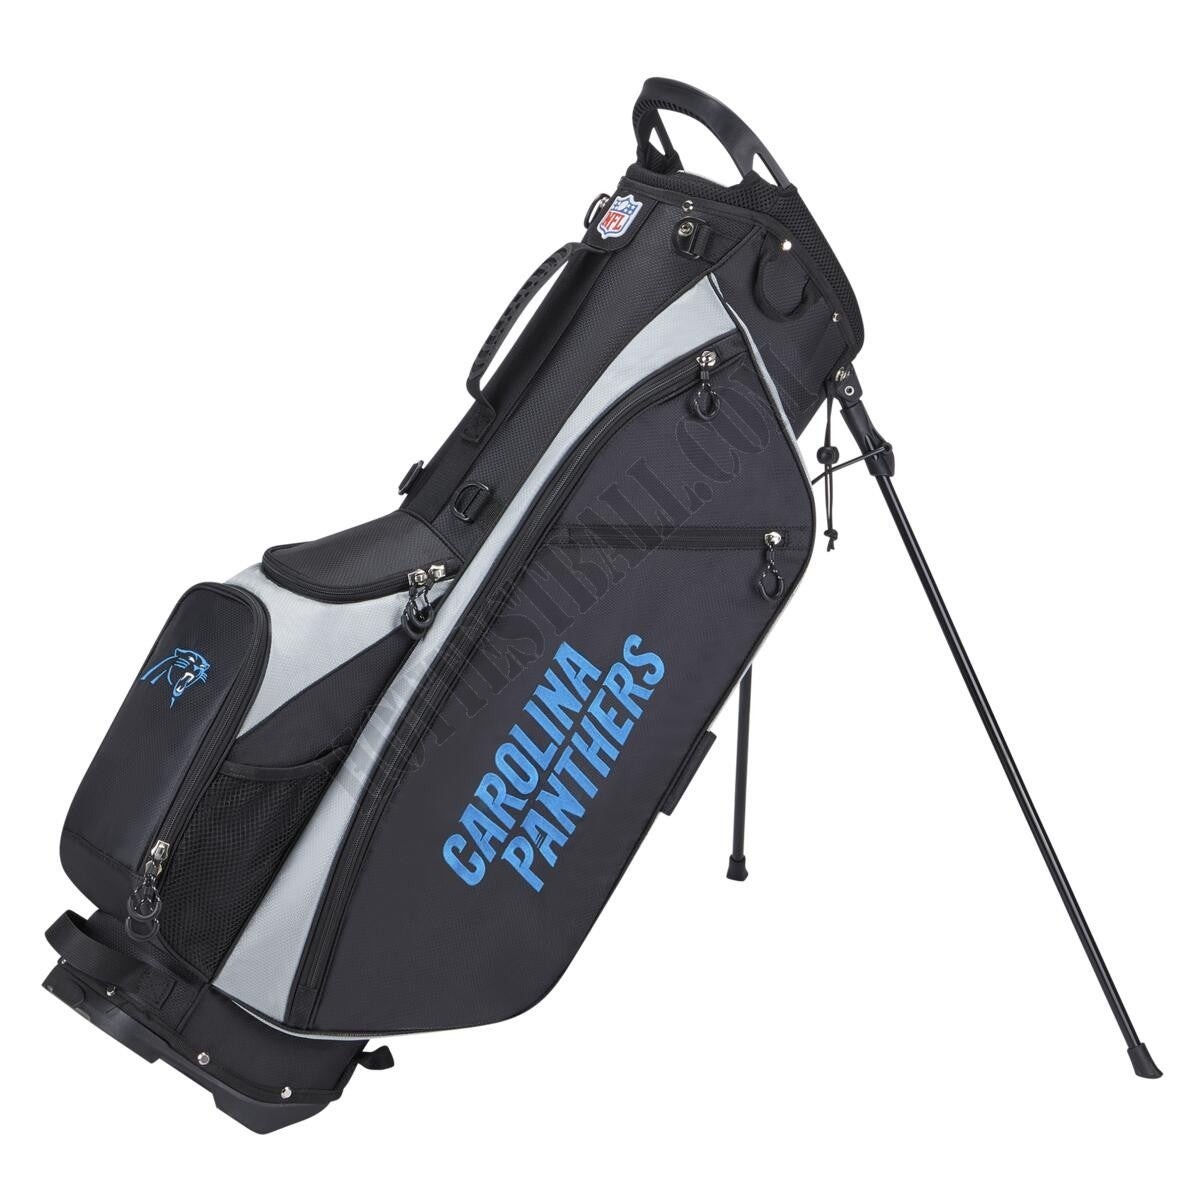 WIlson NFL Carry Golf Bag - Carolina Panthers ● Wilson Promotions - WIlson NFL Carry Golf Bag - Carolina Panthers ● Wilson Promotions